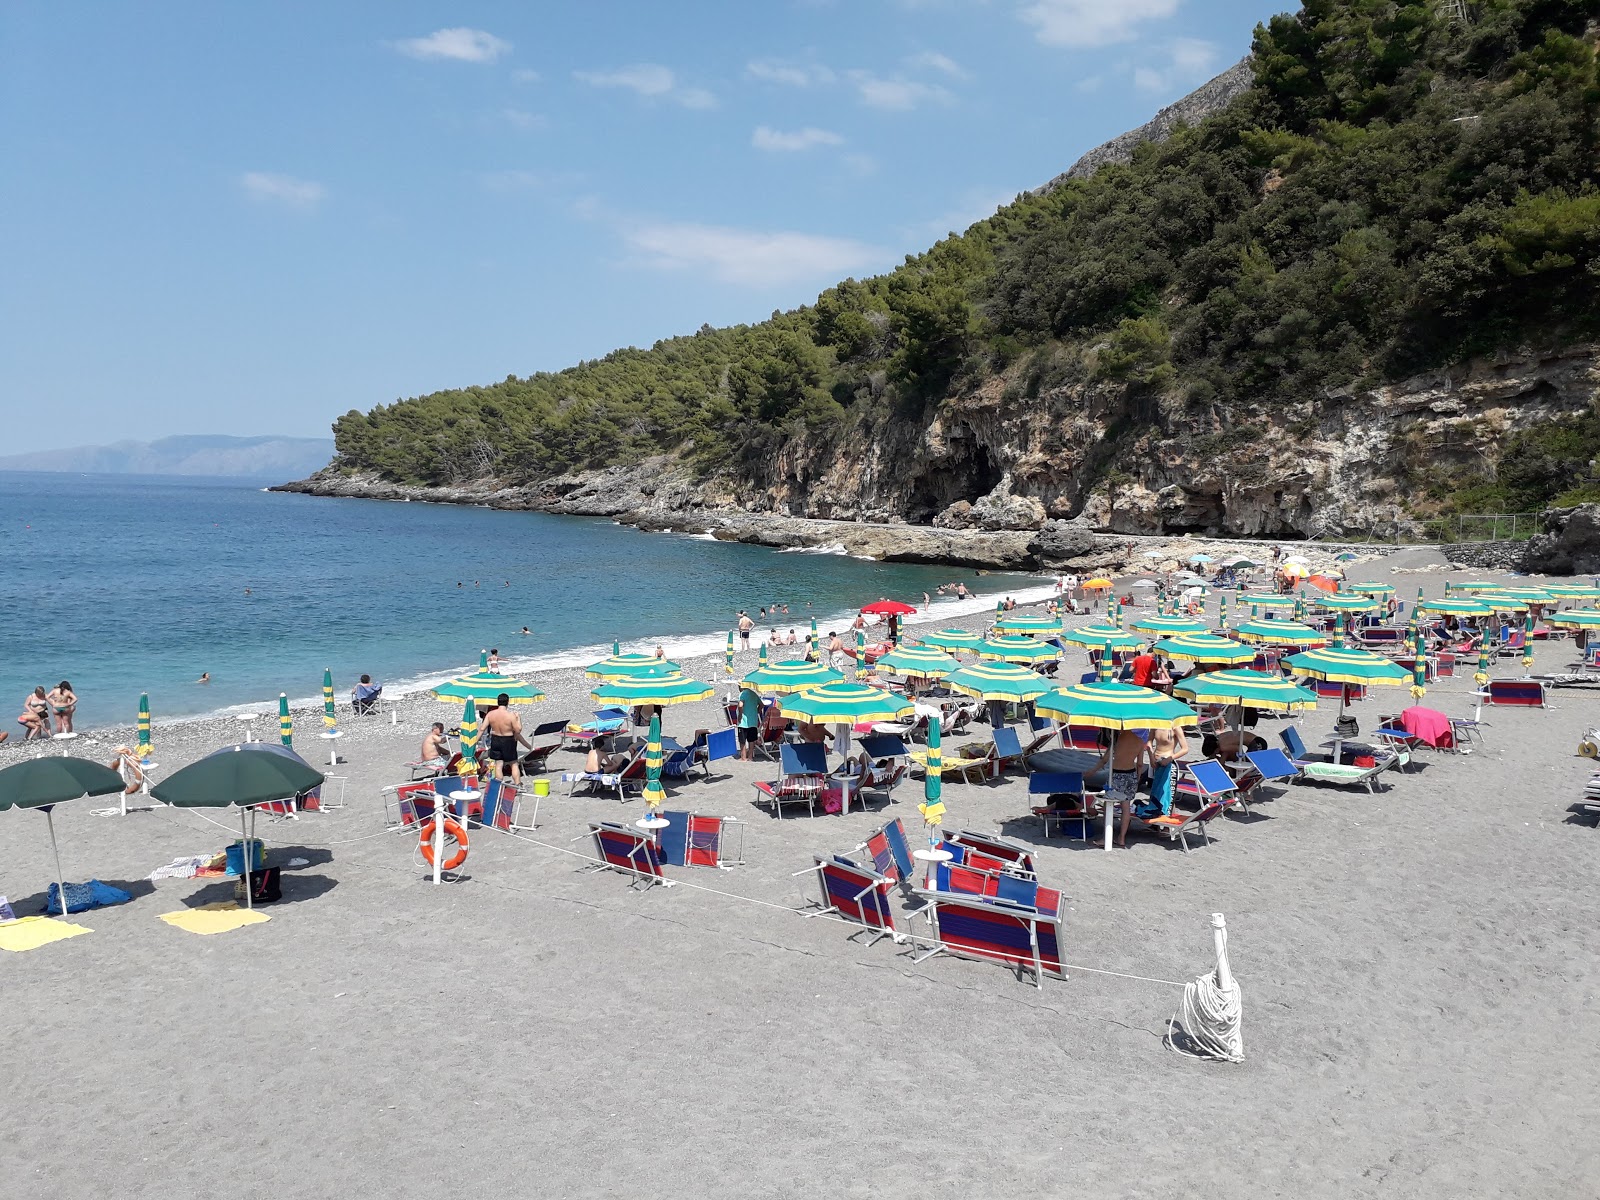 Photo de Spiaggia di Fiumicello situé dans une zone naturelle